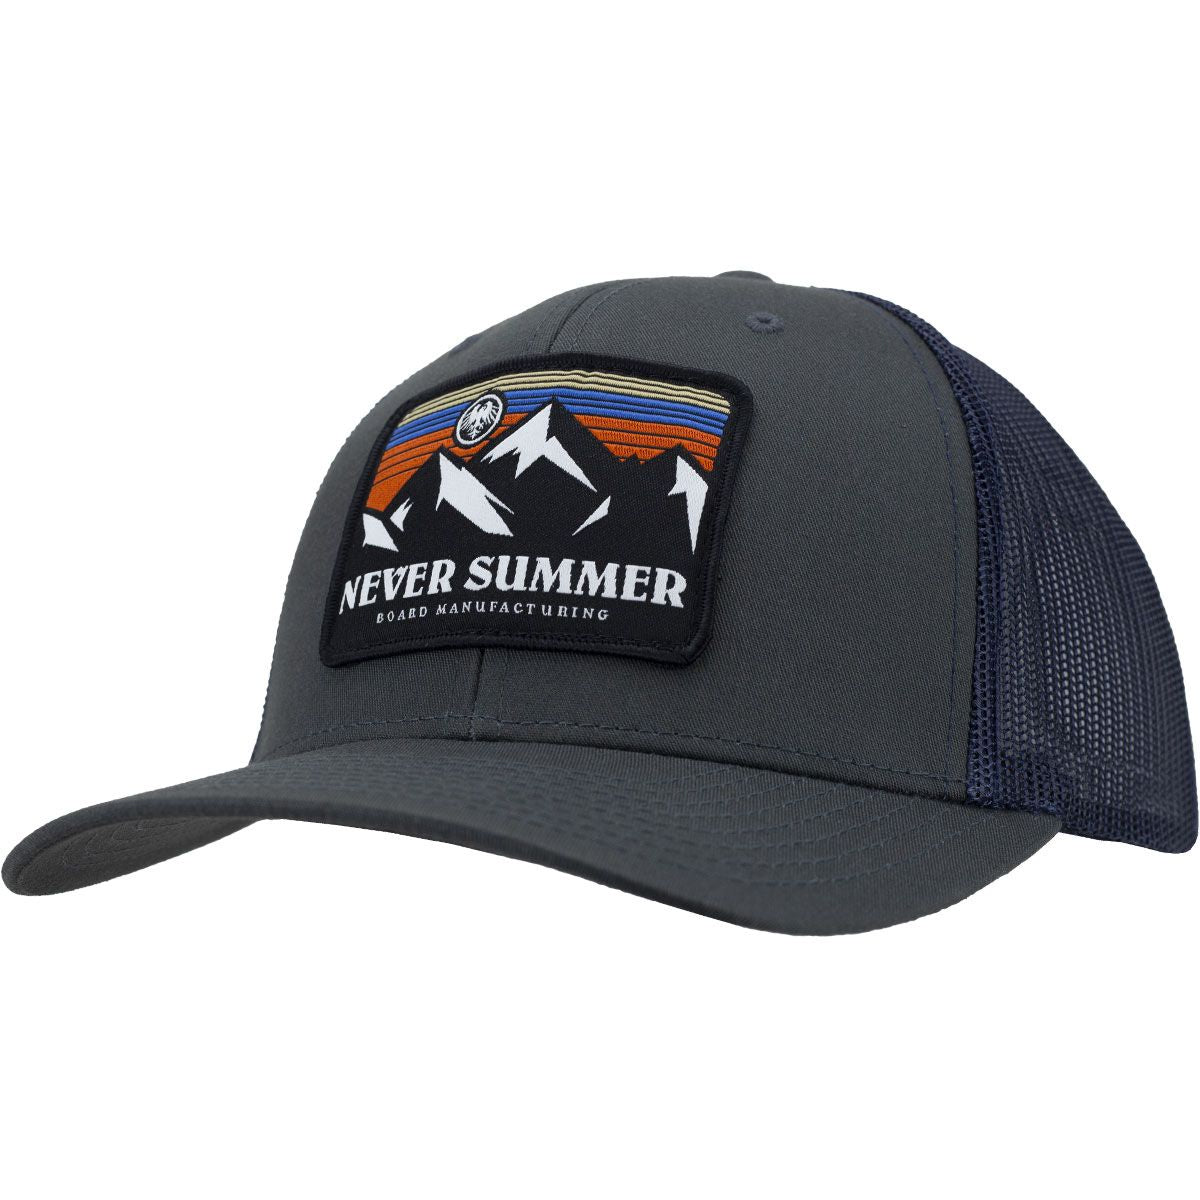 Never Summer 24 Retro Sunset Trucker